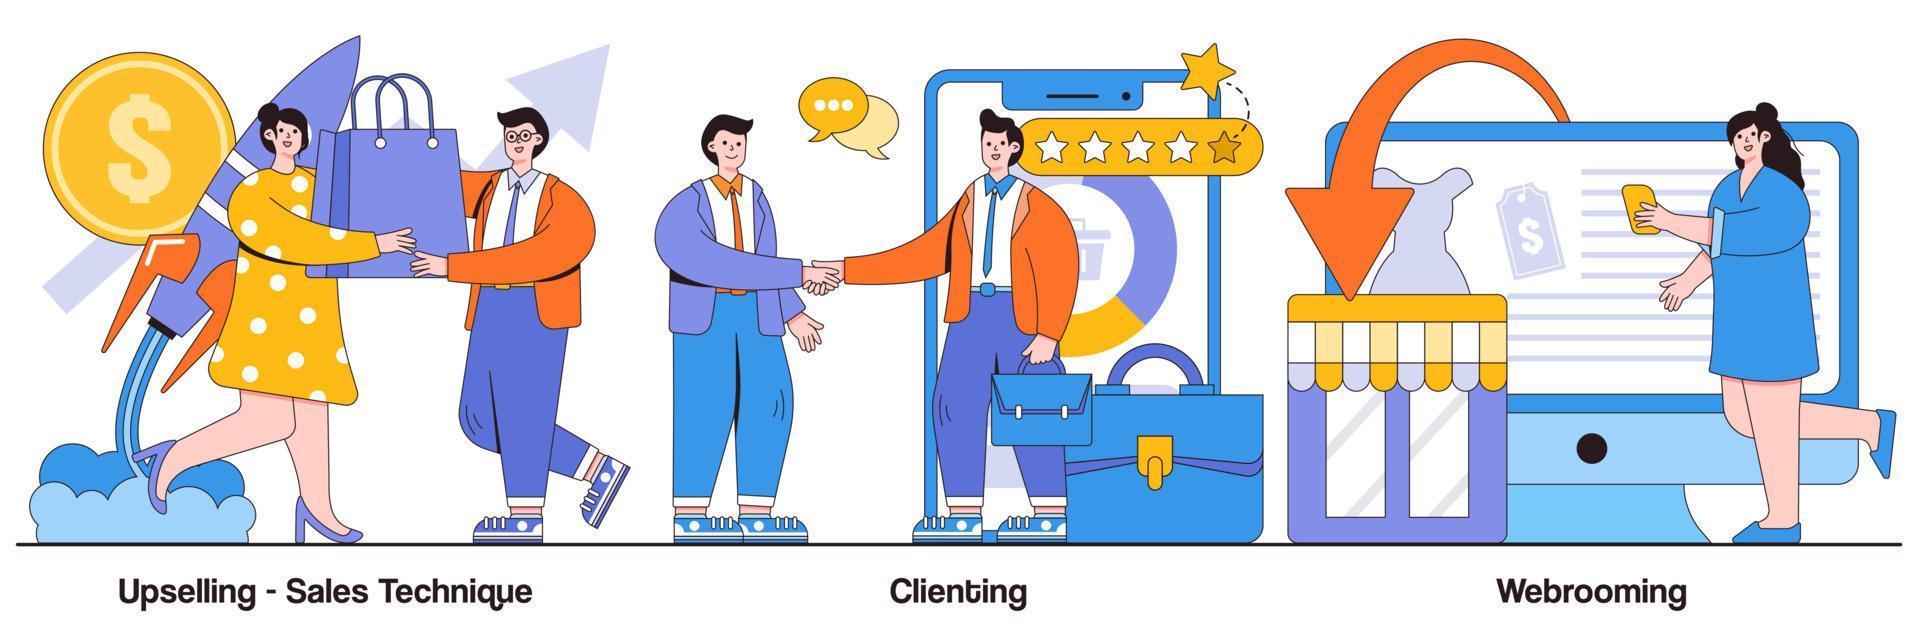 Pacchetto illustrato di tecniche di vendita upselling, clienti e webrooming vettore